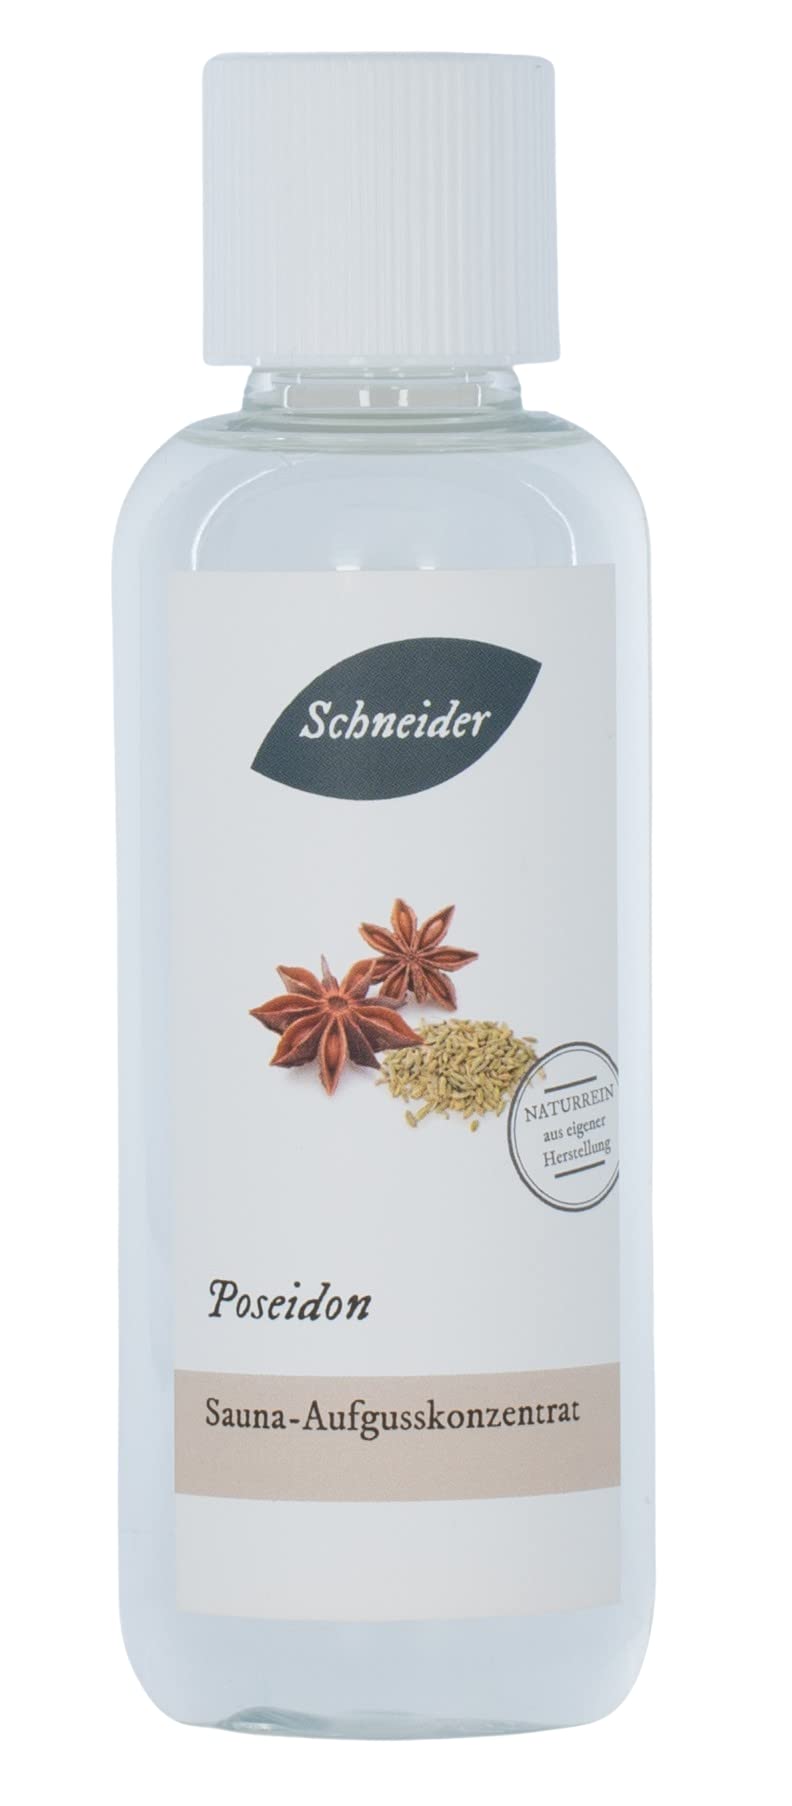 Saunabedarf Schneider - Aufgusskonzentrat Poseidon - aromatisch-würziger Saunaaufguss - 250ml Inhalt